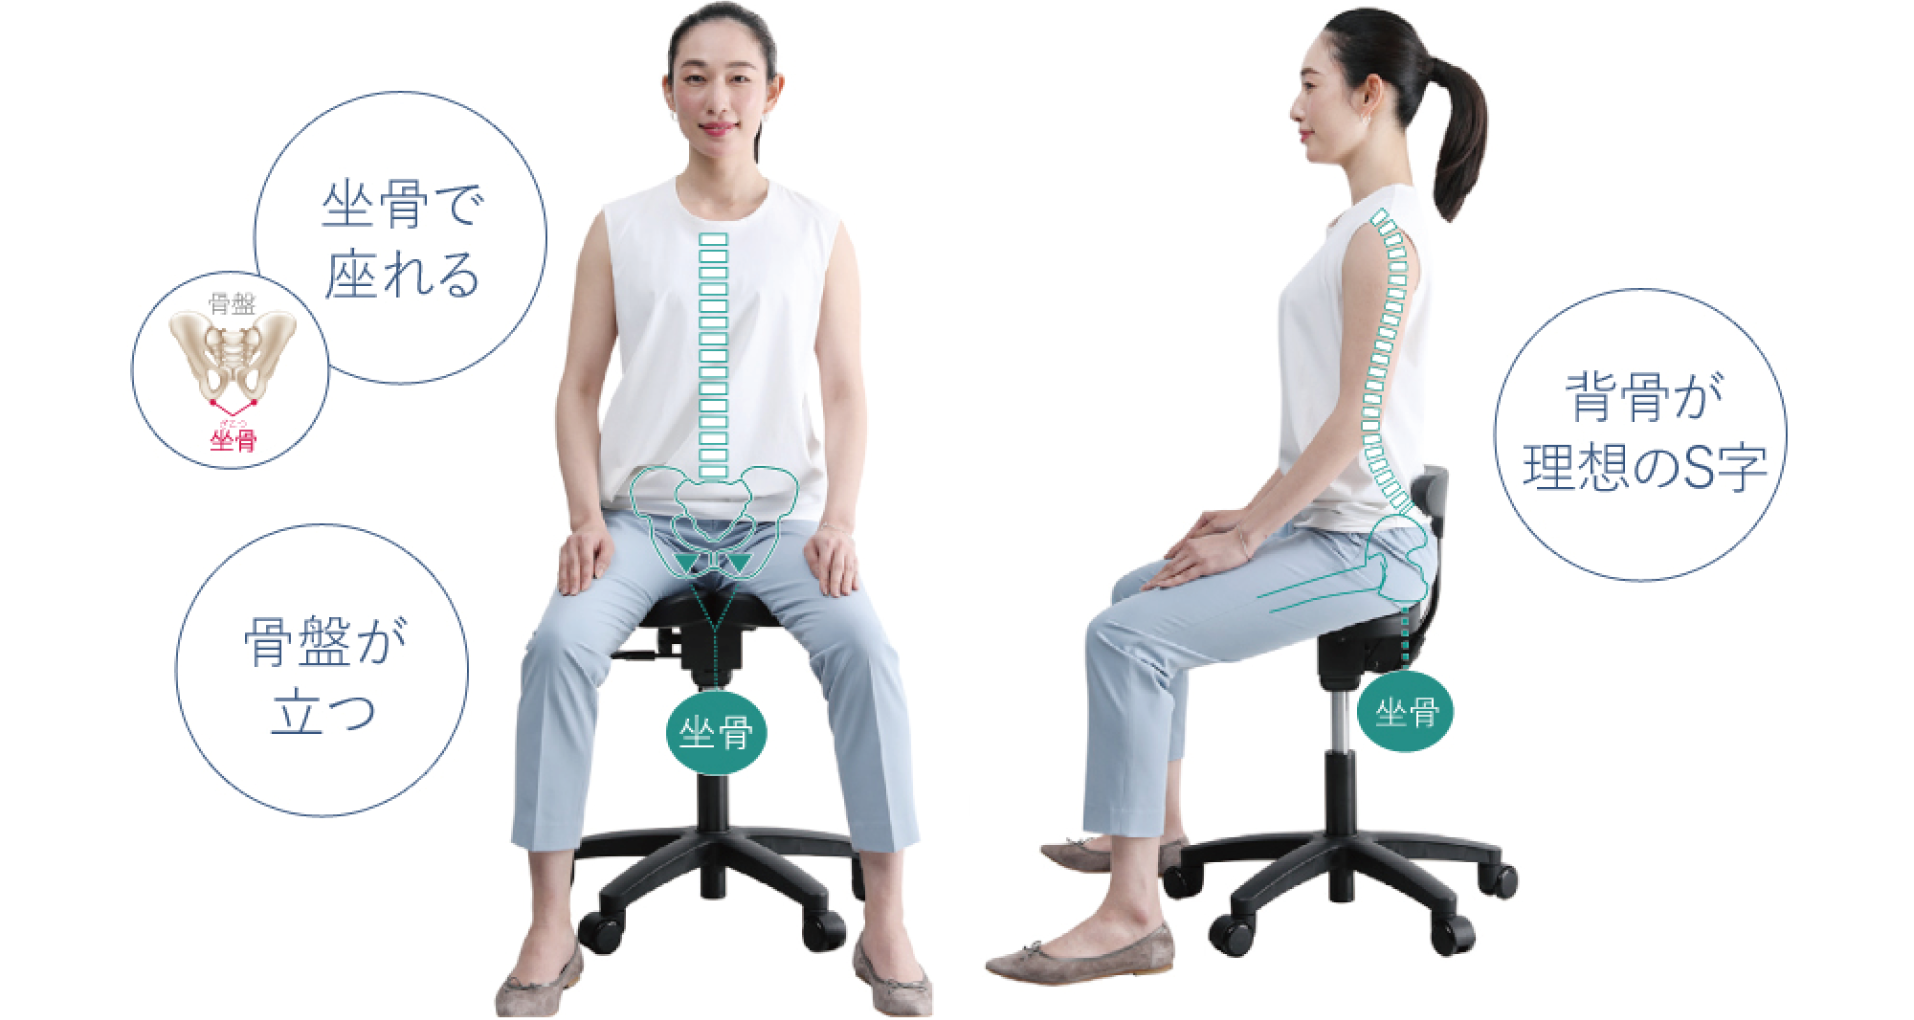 アーユルチェア メディカルシート ブラック  黒 腰痛対策 姿勢矯正椅子